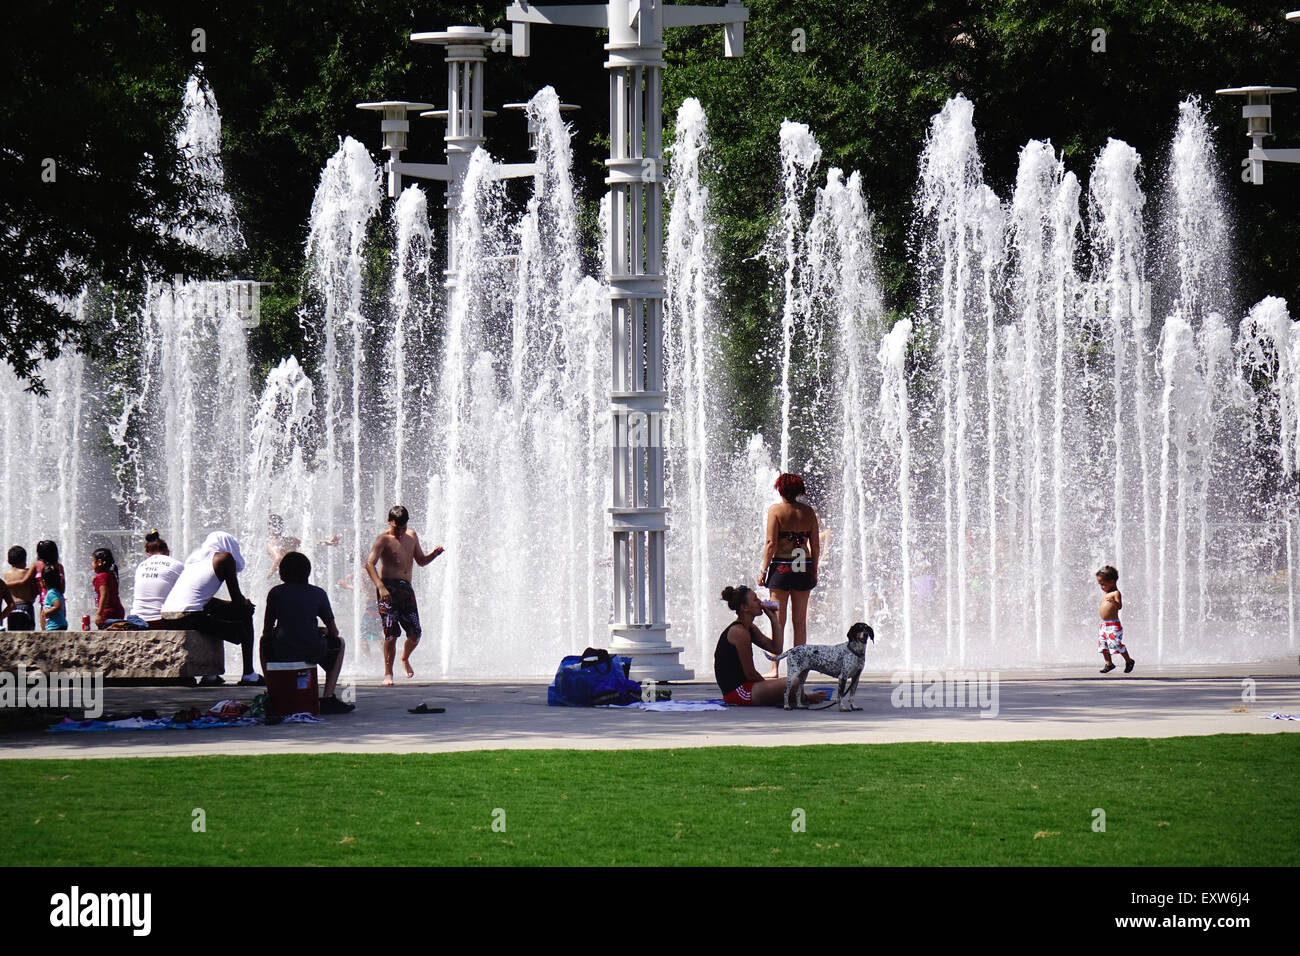 Adulti e bambini giocare in acqua fontane in fiera mondiale del parco, Knoxville, Tennessee, fontane di acqua su un giorno di estate Foto Stock